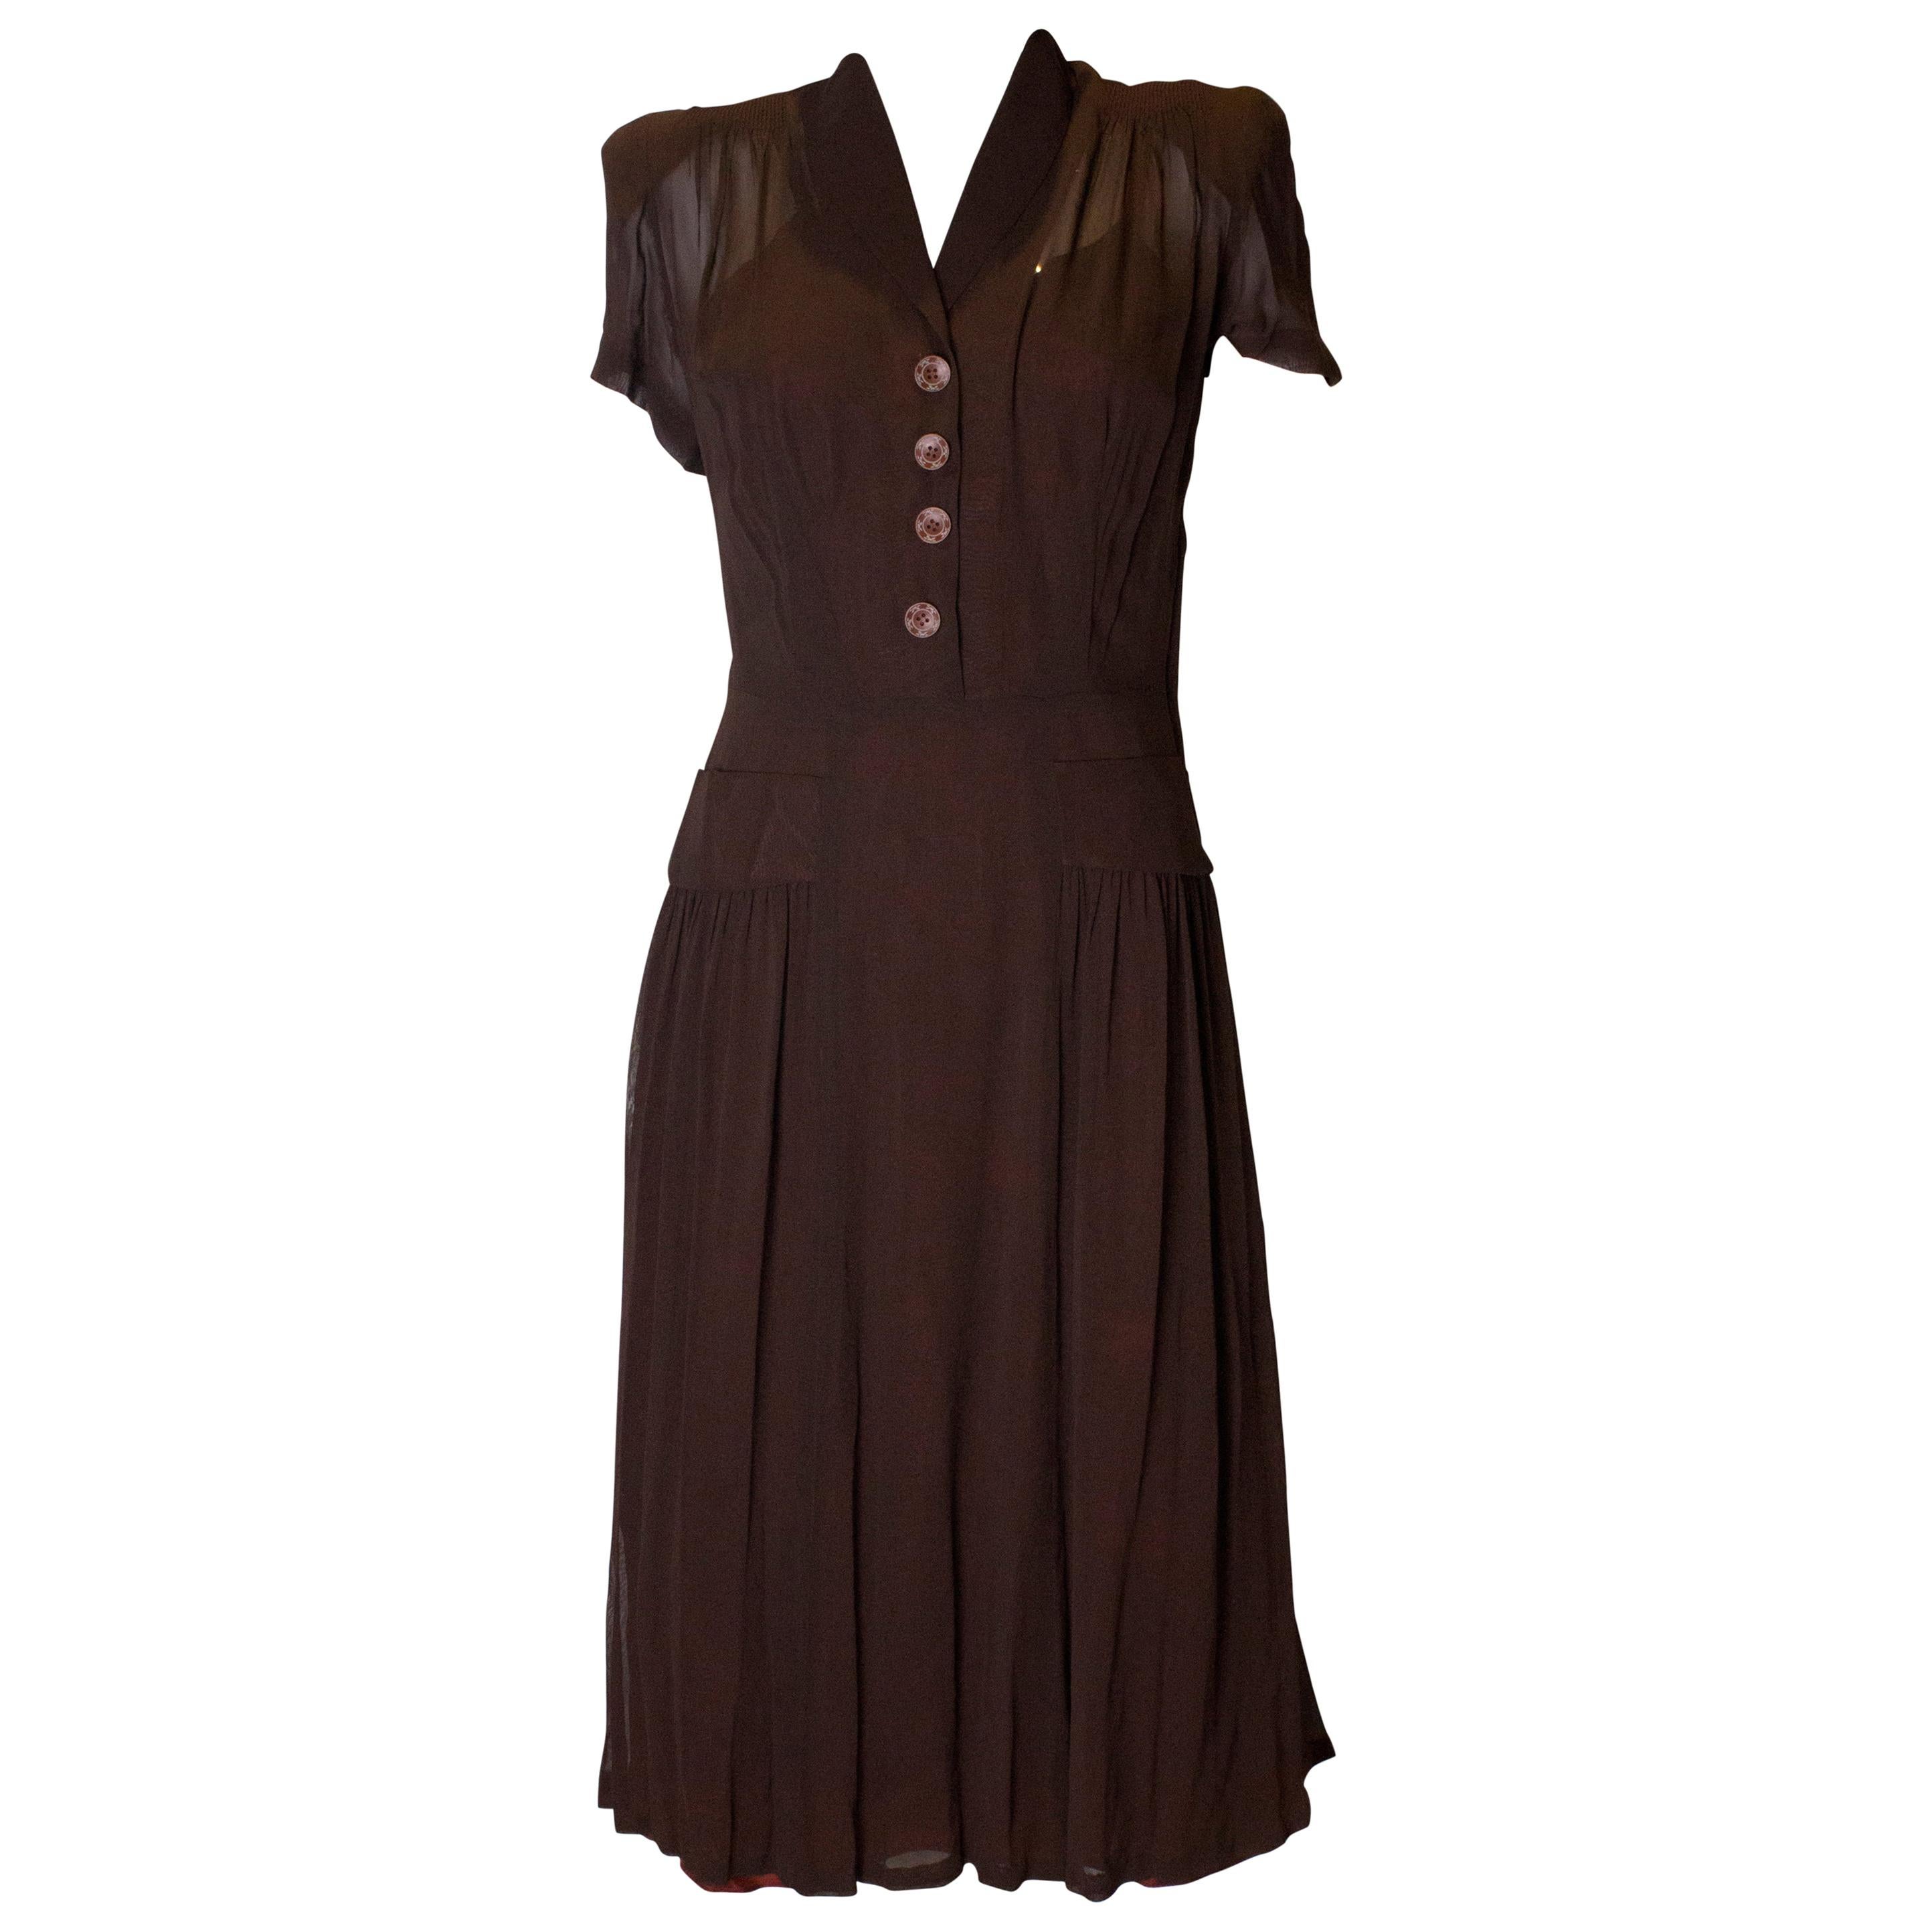 Vintage 1940s Dress For Sale